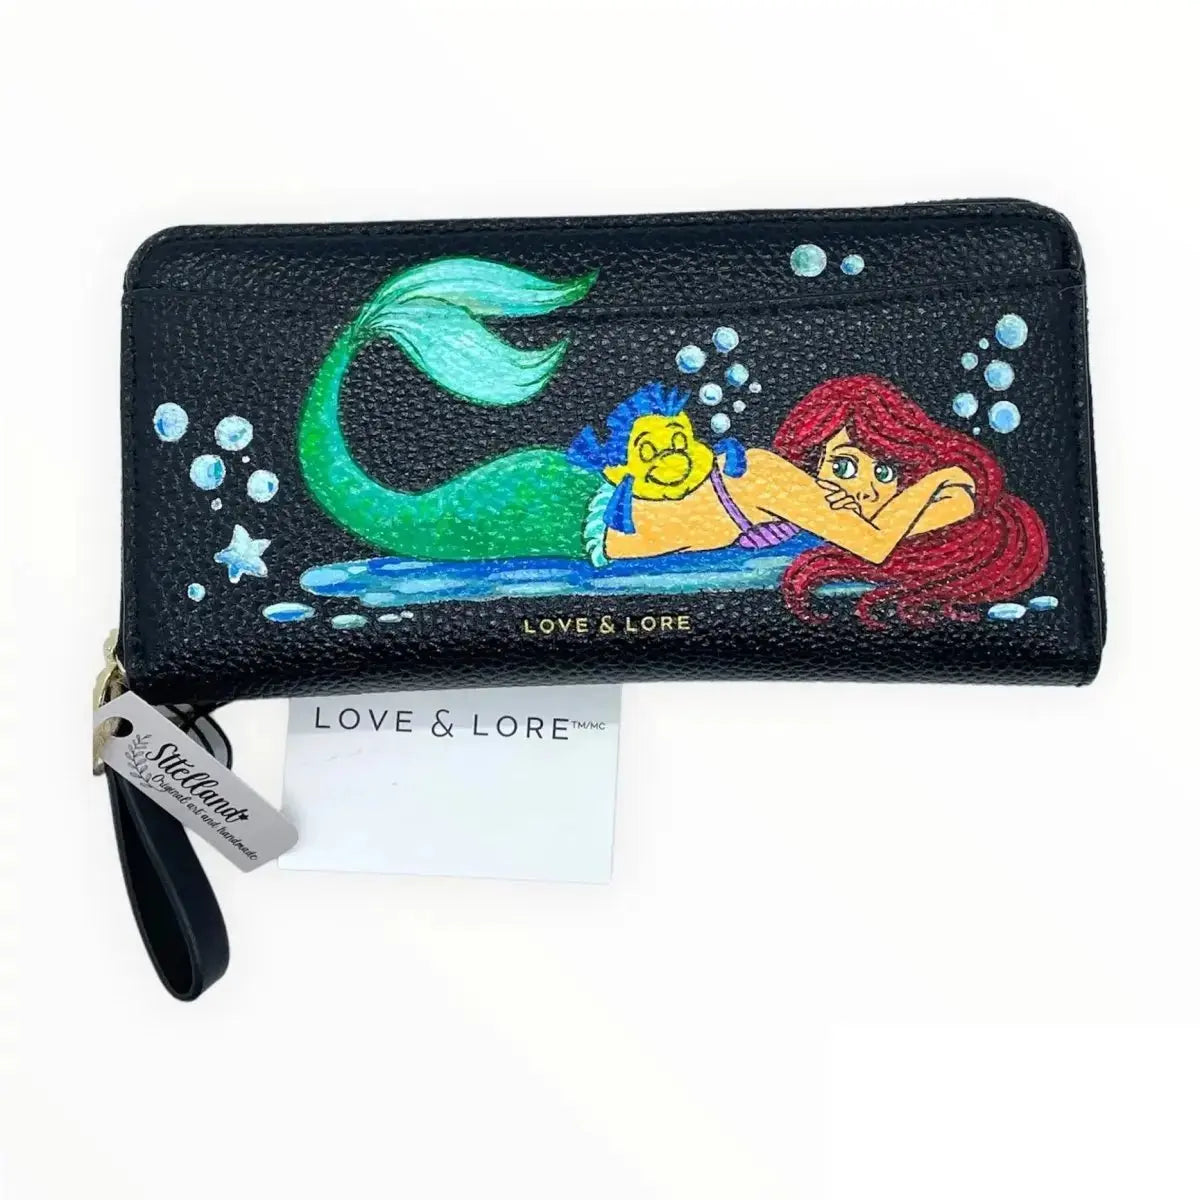 Ariel Little Mermaid design Hand Painted Artwork - Ariel Little Mermaid design - Love & Lore Wallet Sttelland Boutique